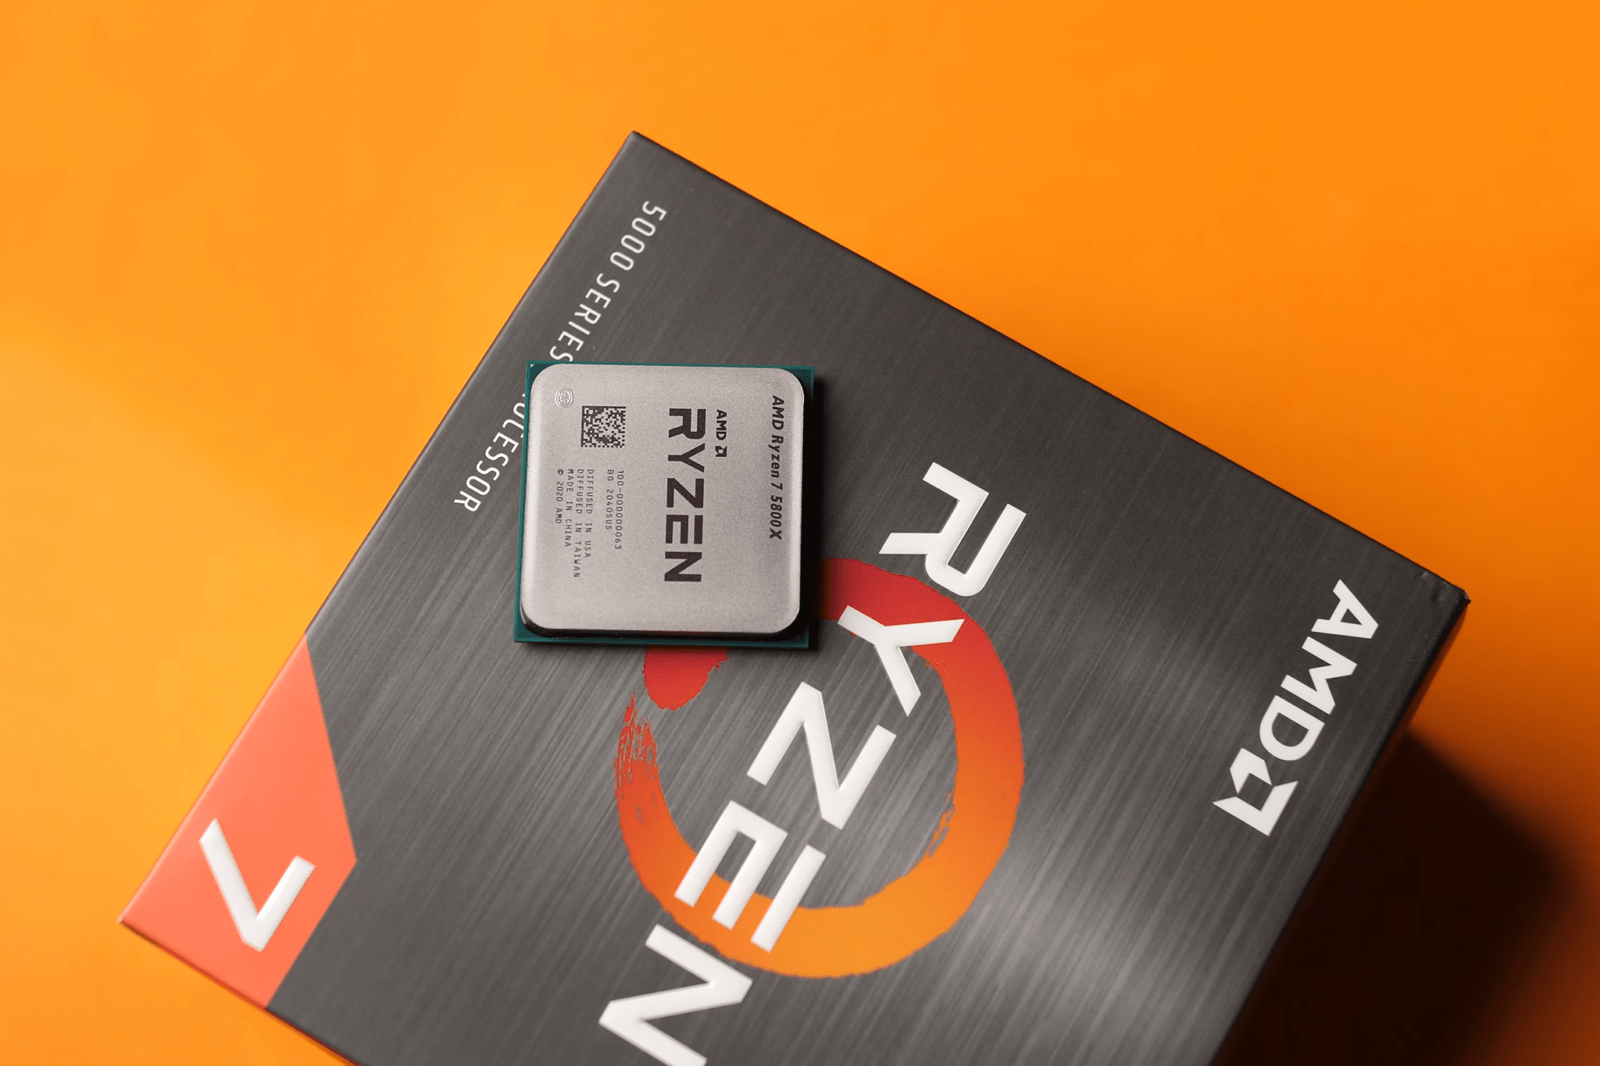 CPU AMD Ryzen 7 5800X3D (8 Nhân / 16 Luồng | 4,5 GHz | 96MB Cache| PCIe 4.0)